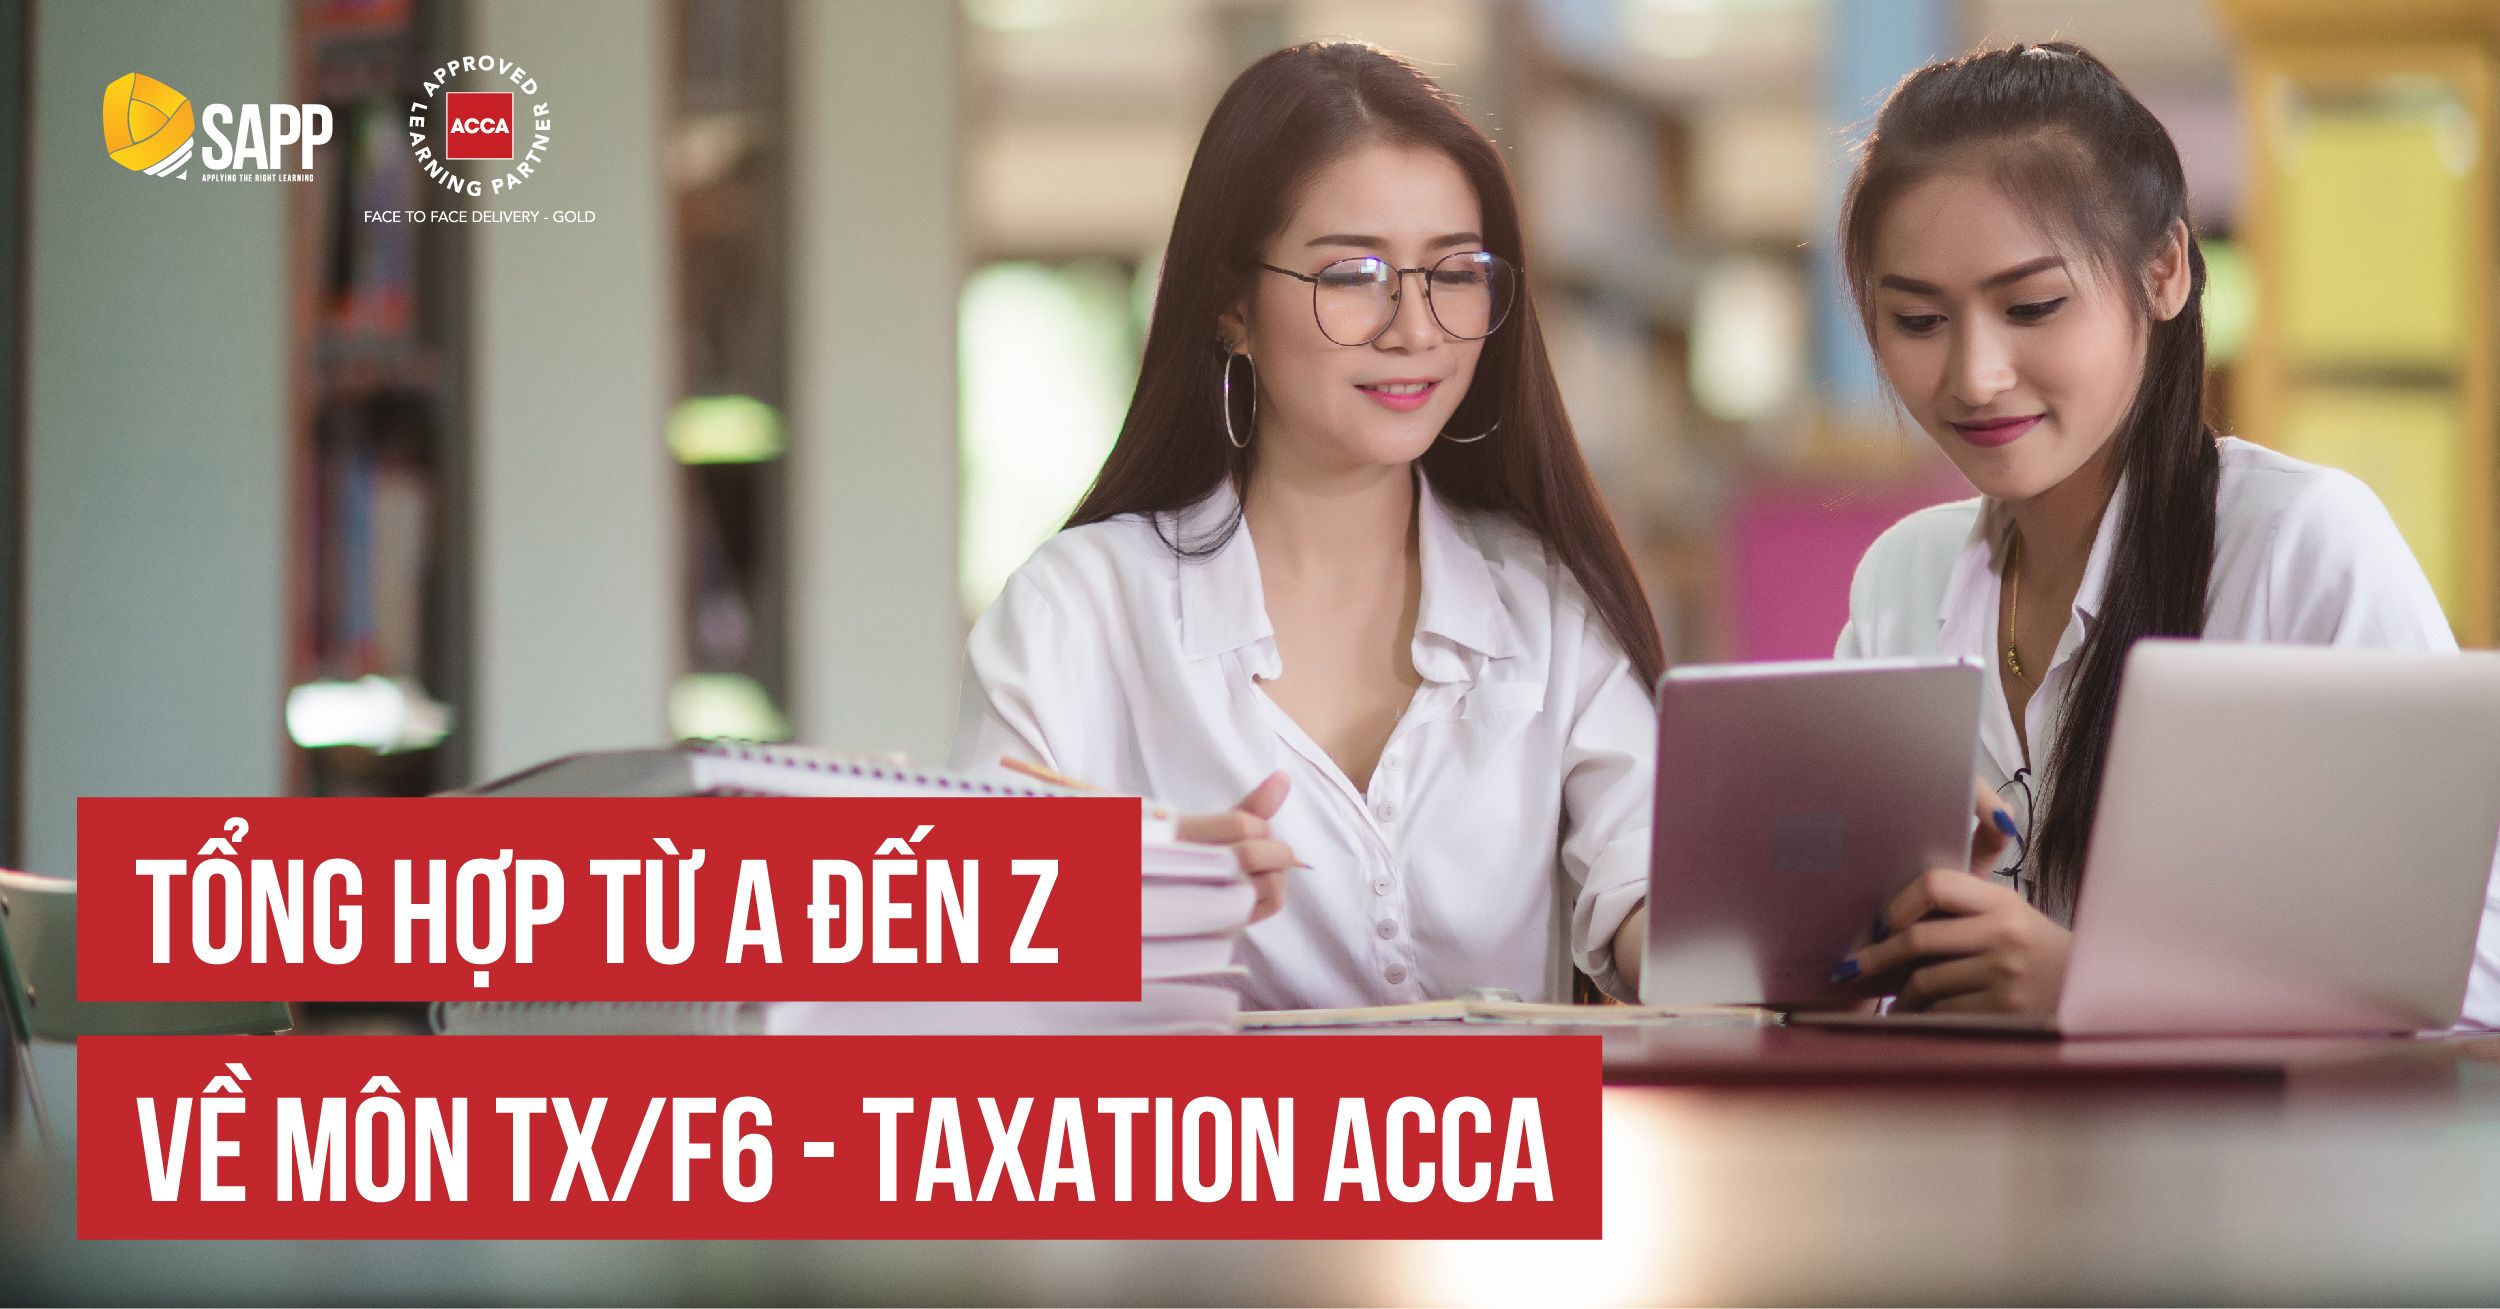 Tổng Hợp Từ A Đến Z Môn TX/F6 - Taxation (Thuế) ACCA